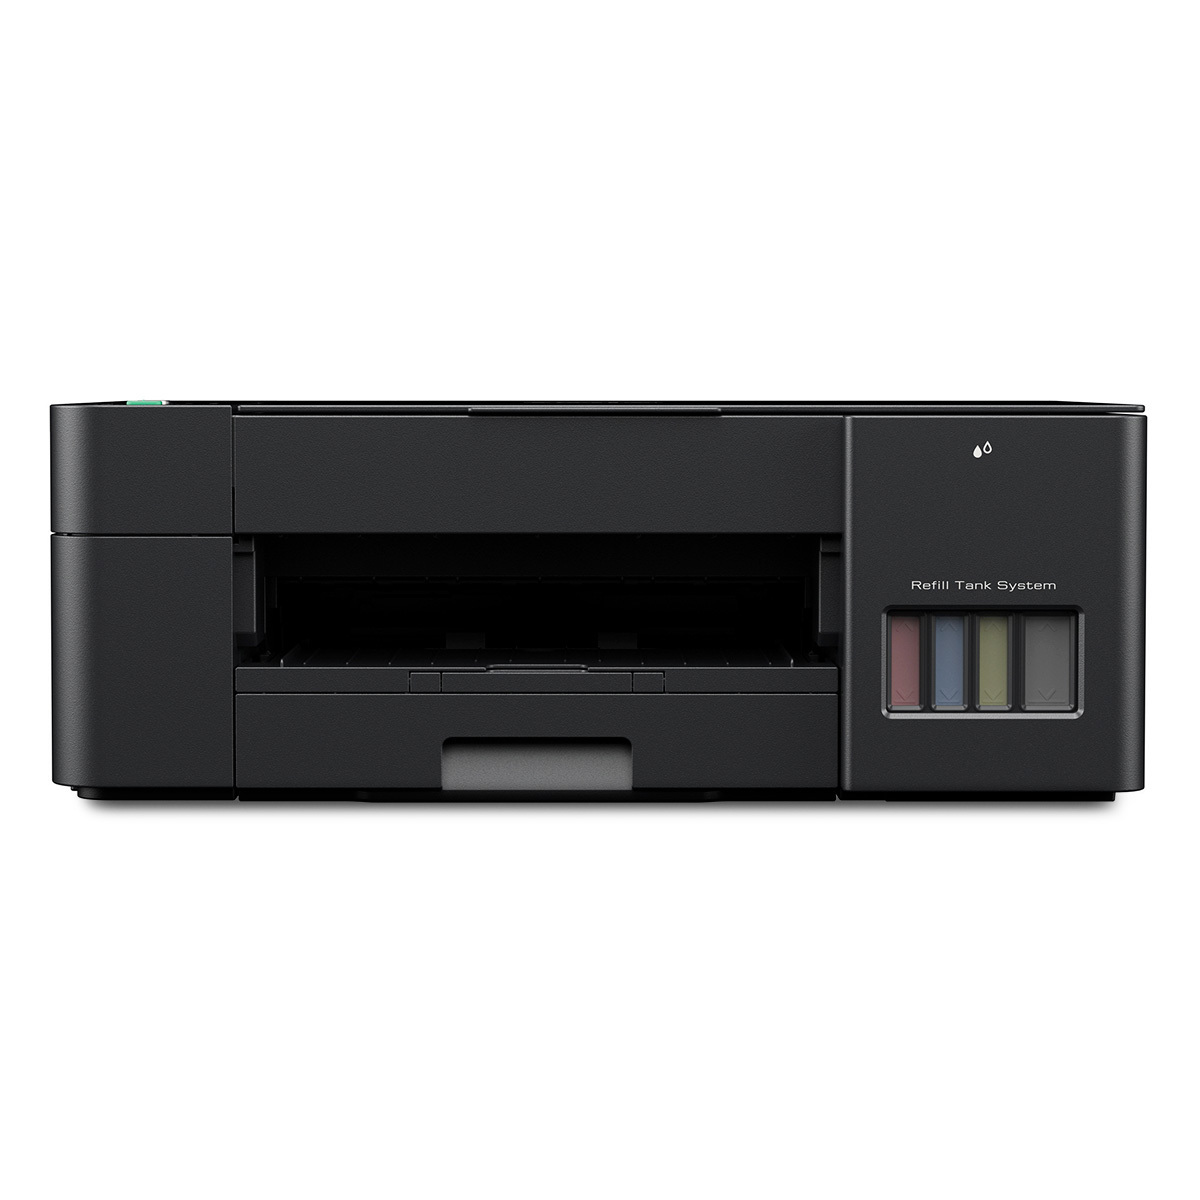 Impresora Multifuncional Brother DCP-T220 / Inyección de tinta / Color / USB